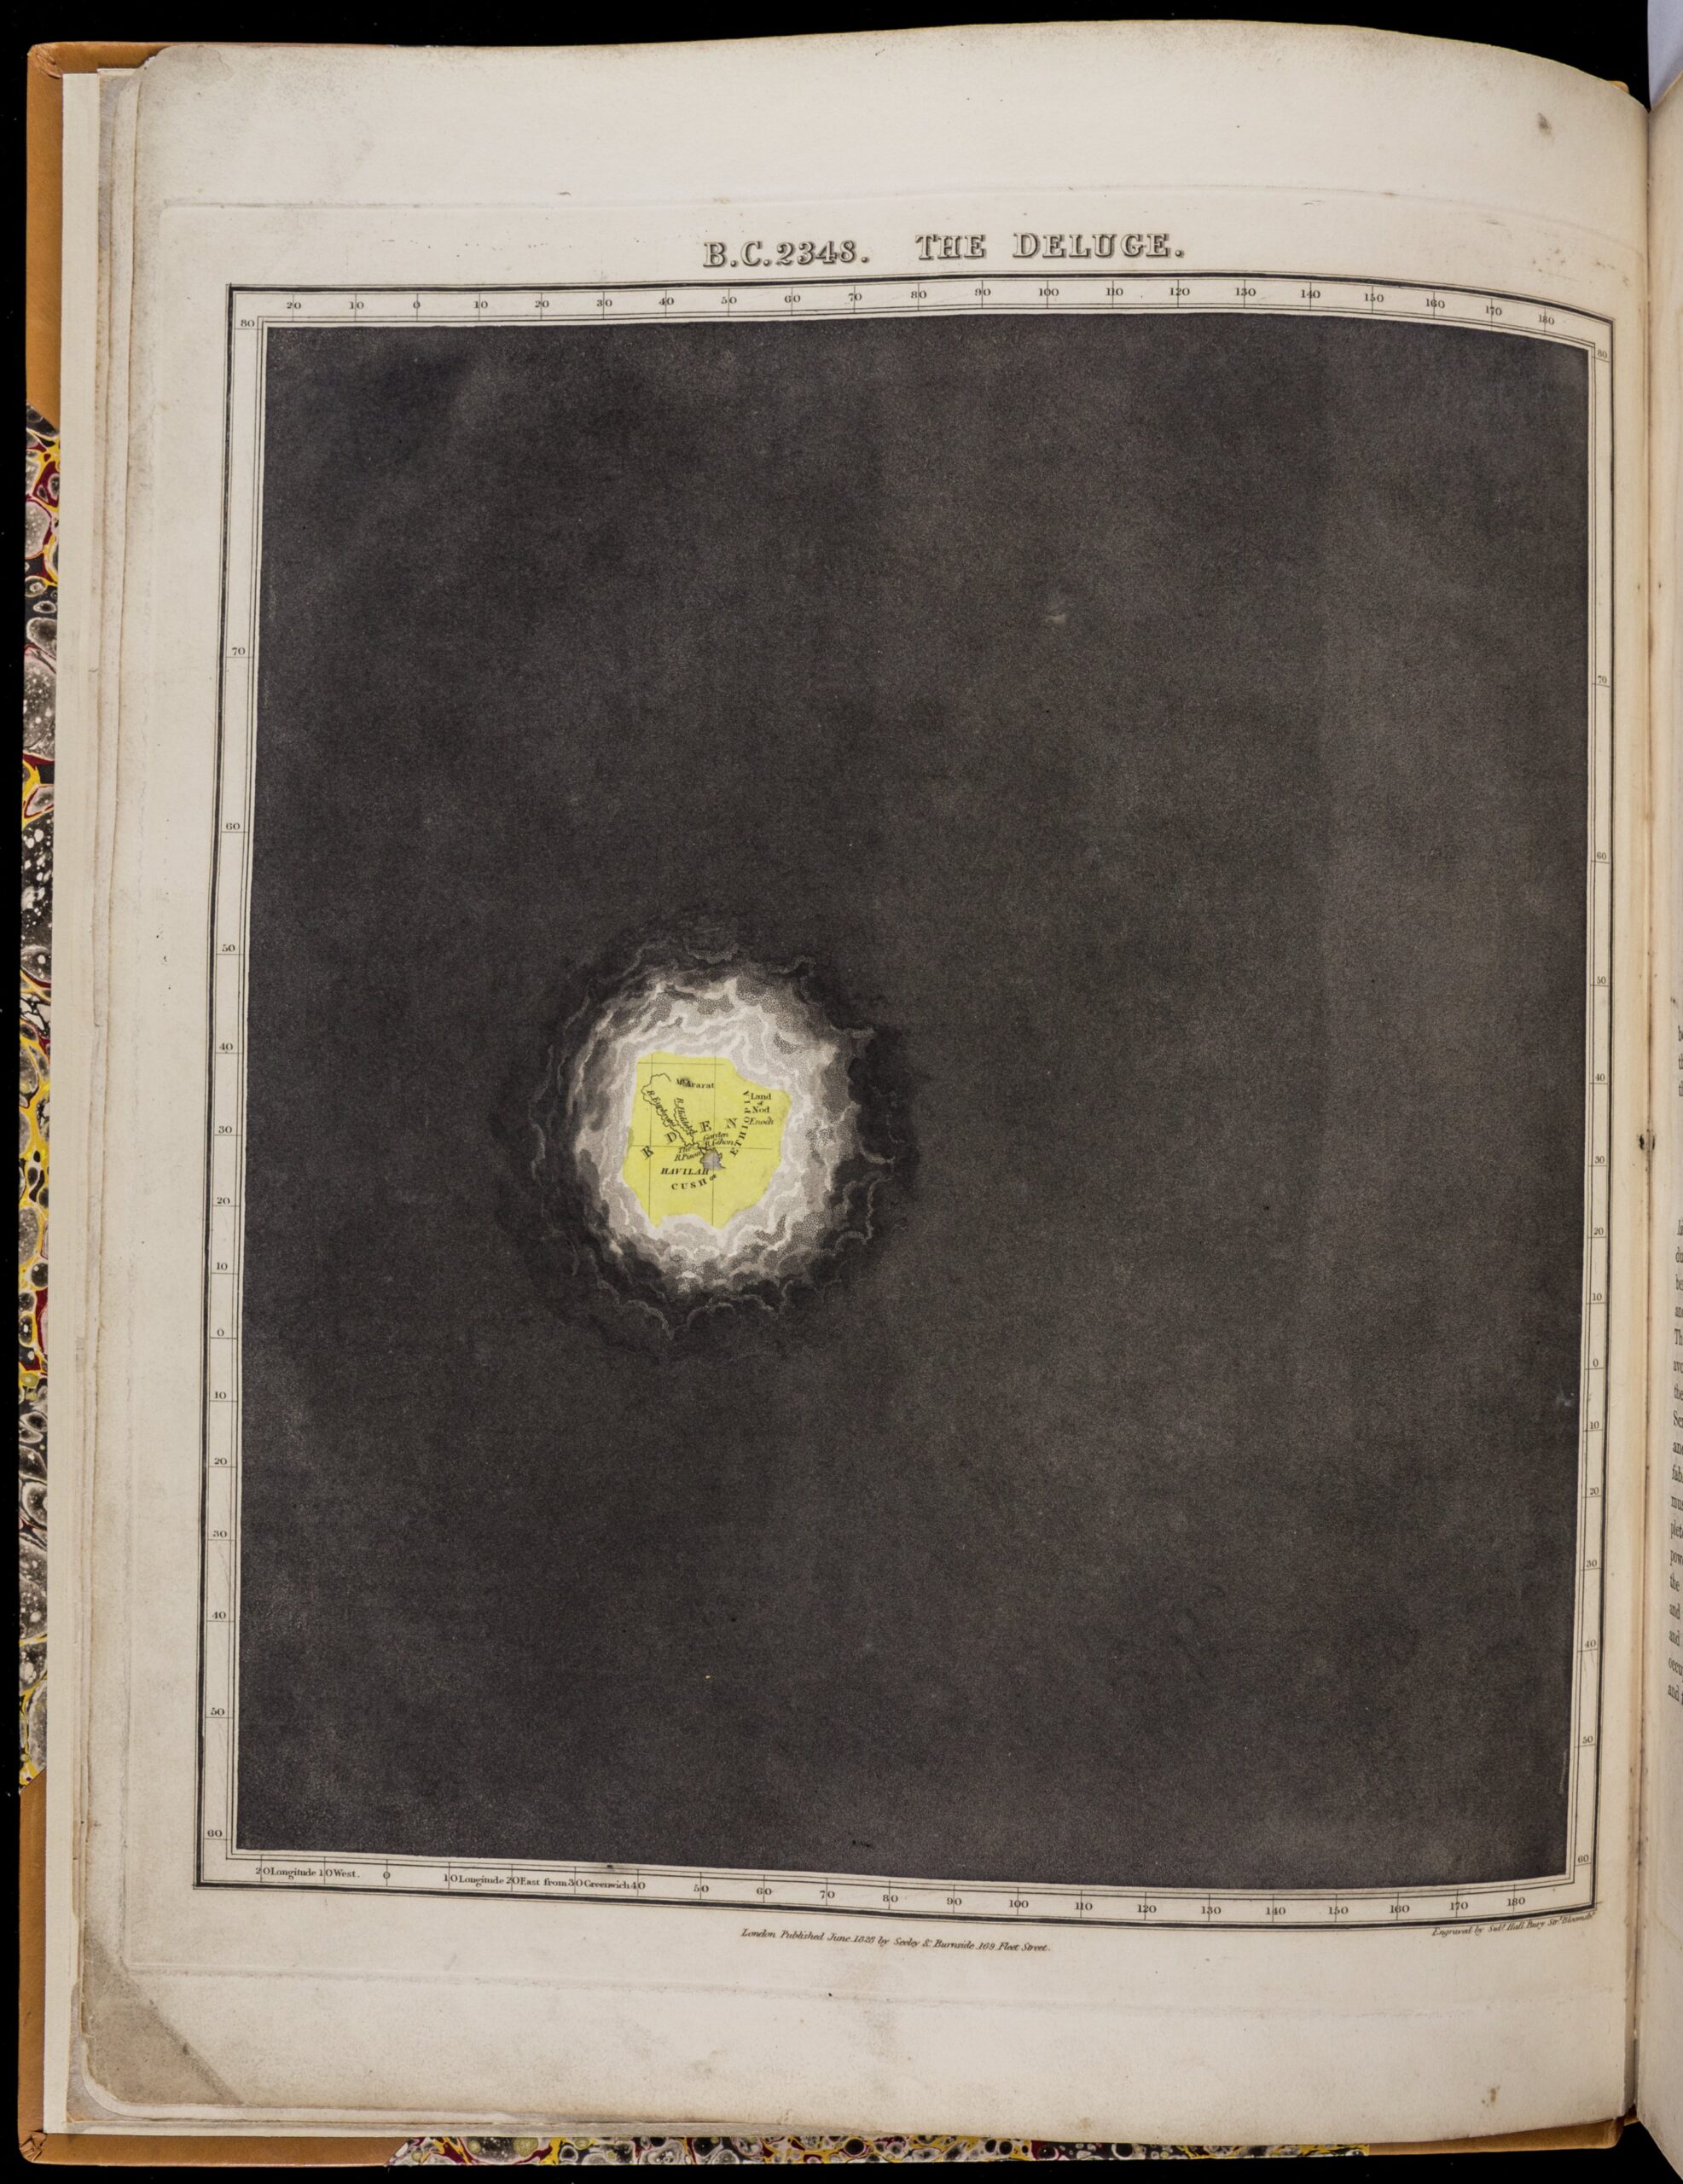 Prawie całkowicie czarny obraz z małą dziurą w chmurach nad żółtą plamą oznaczoną „Eden”.